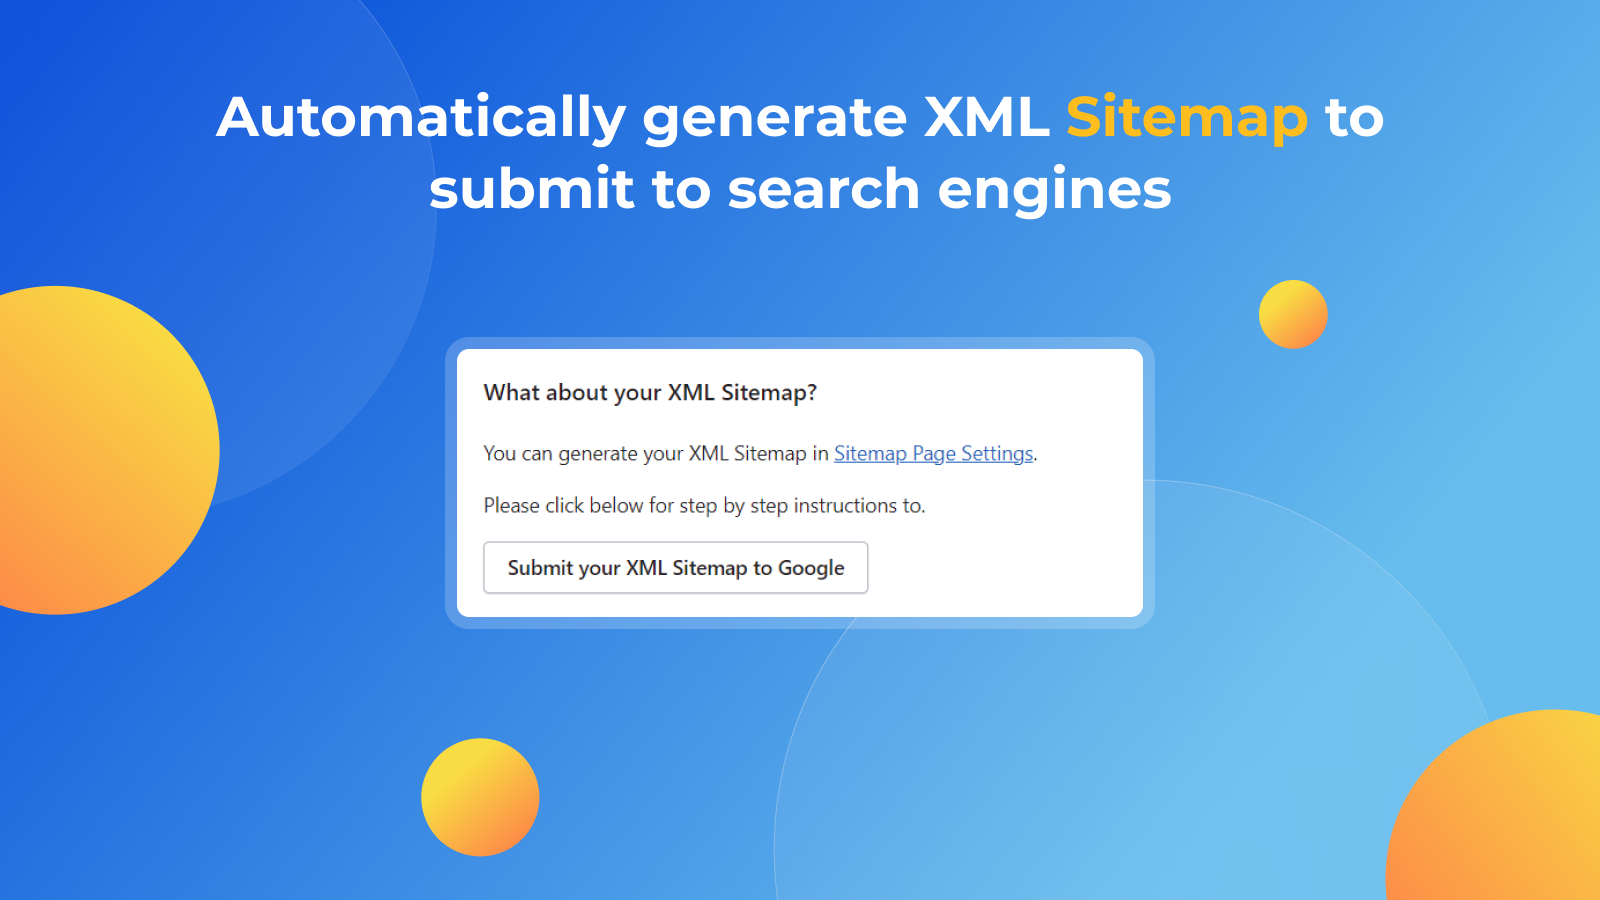 Indsend dit brugerdefinerede XML sitemap til Google Console